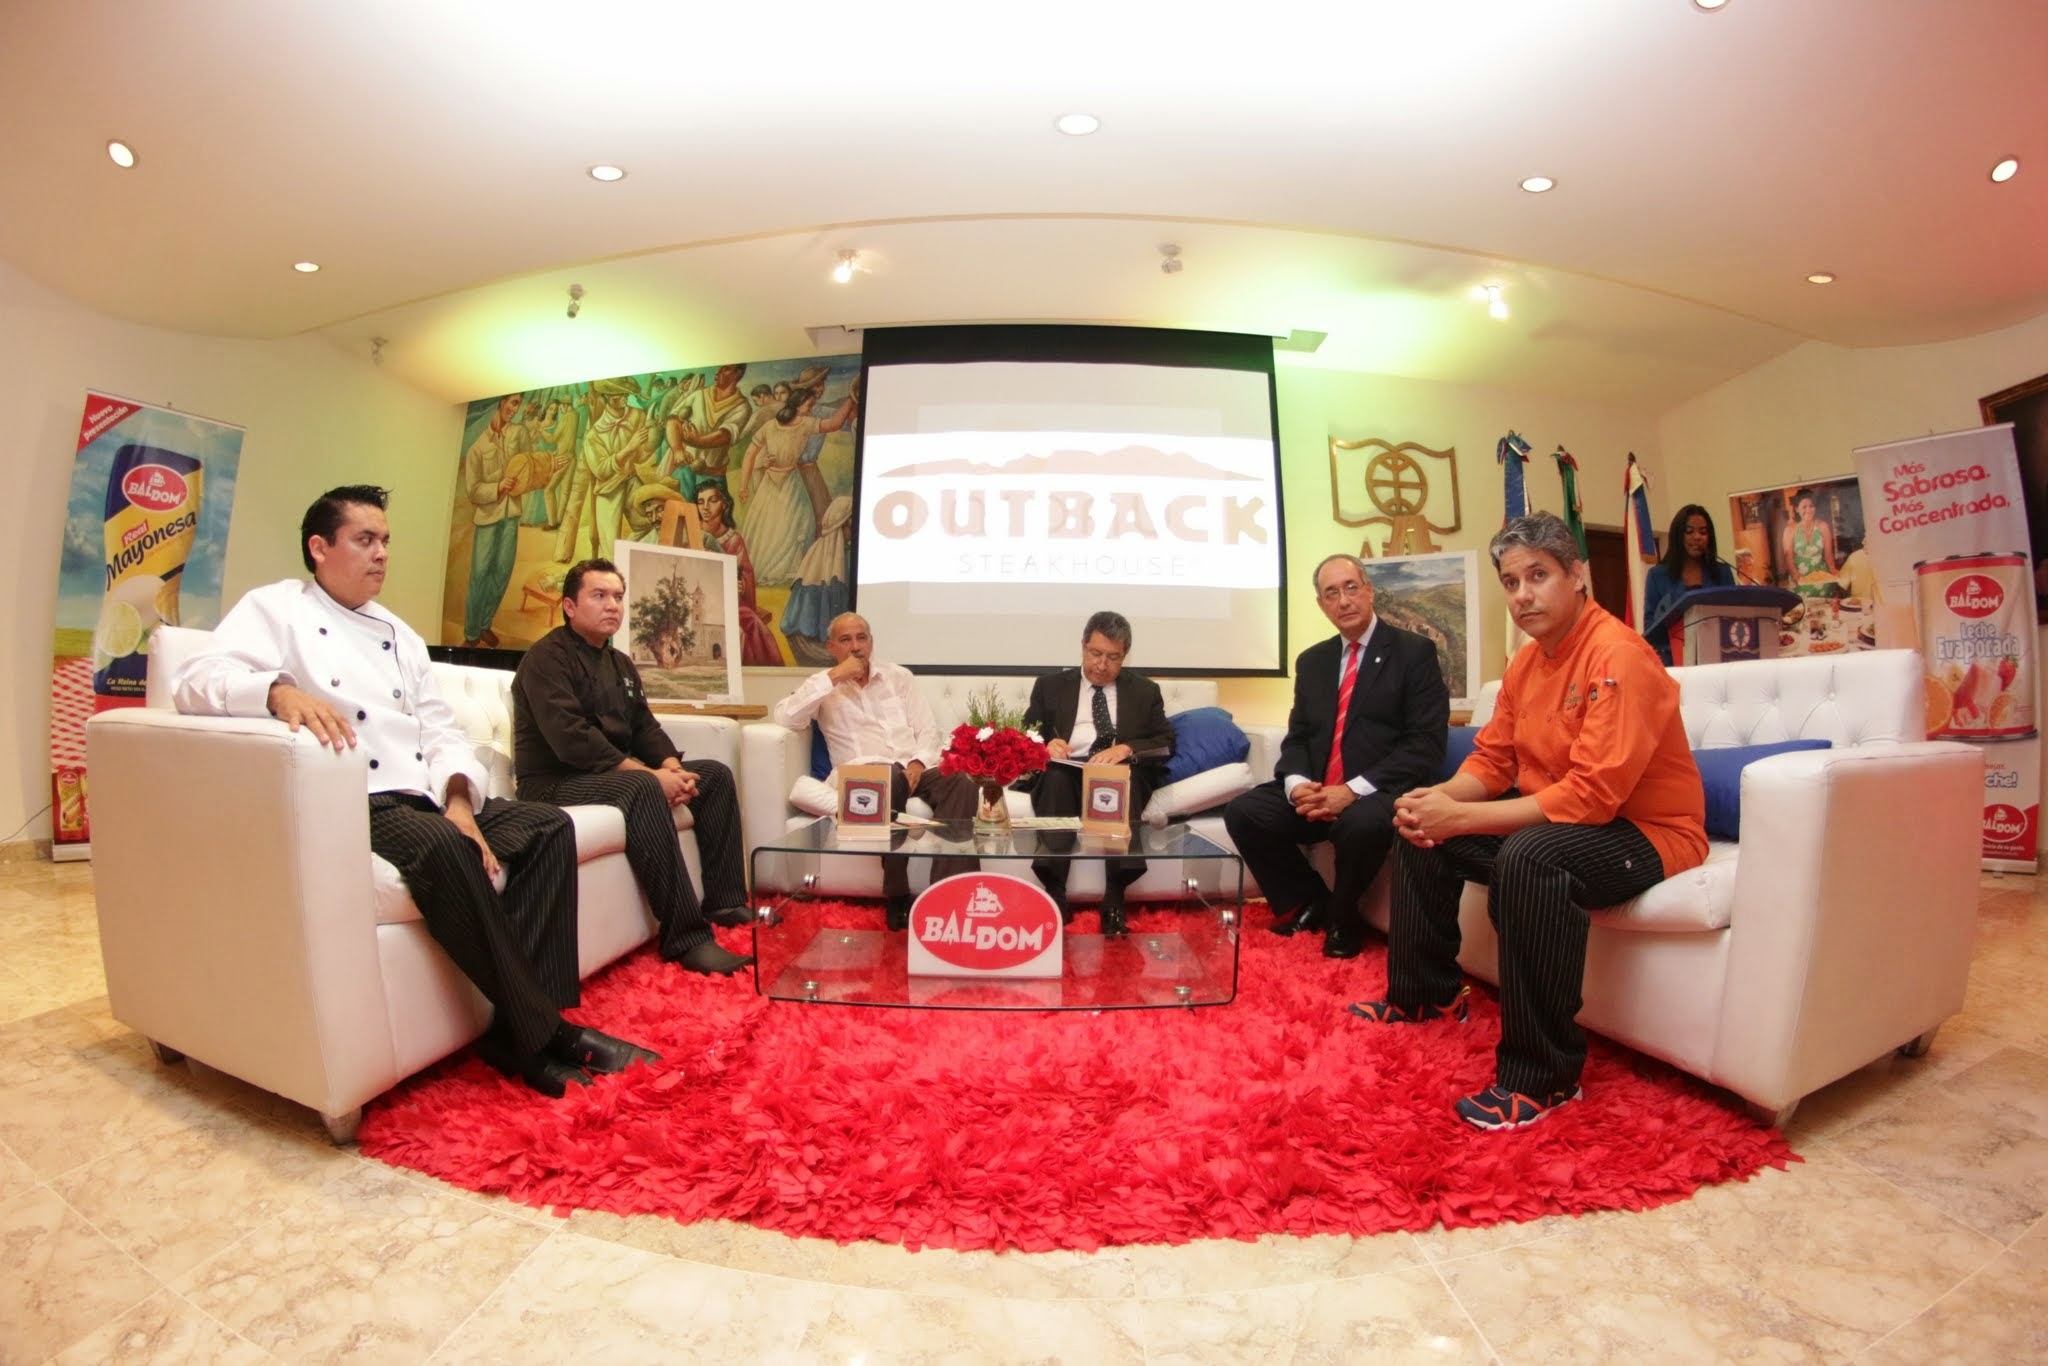 La activiad fue realizada en el Salón APEC de la Cultura José María Bonetti Burgos.